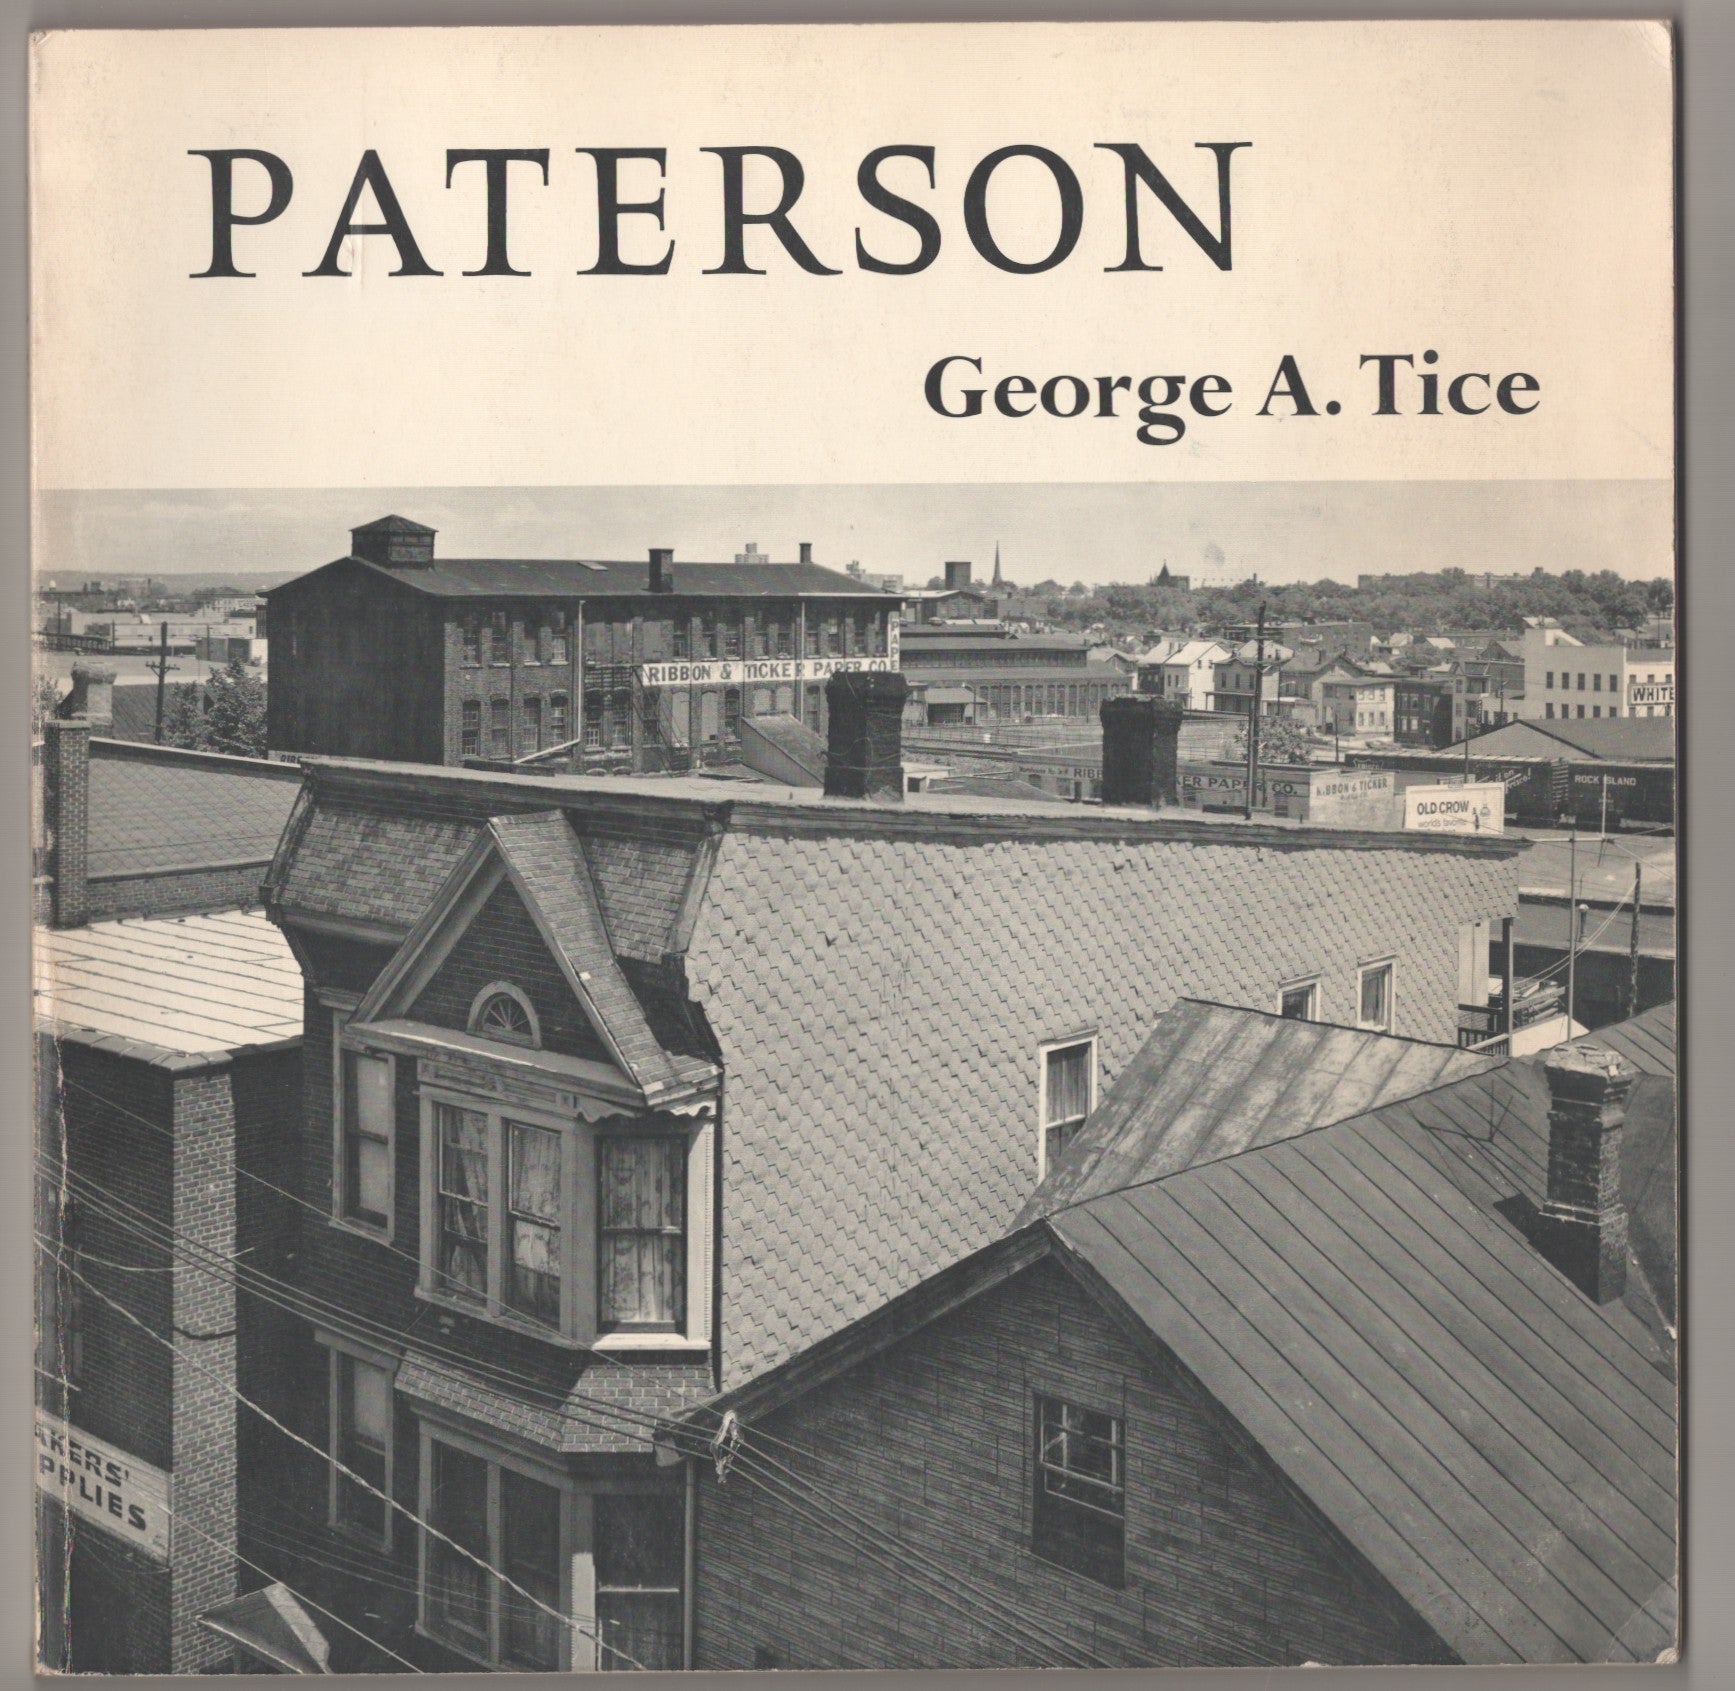 【好評豊富な】George Tice Paterson Ⅱ photo book ジョージ A. タイス 写真集 アート写真